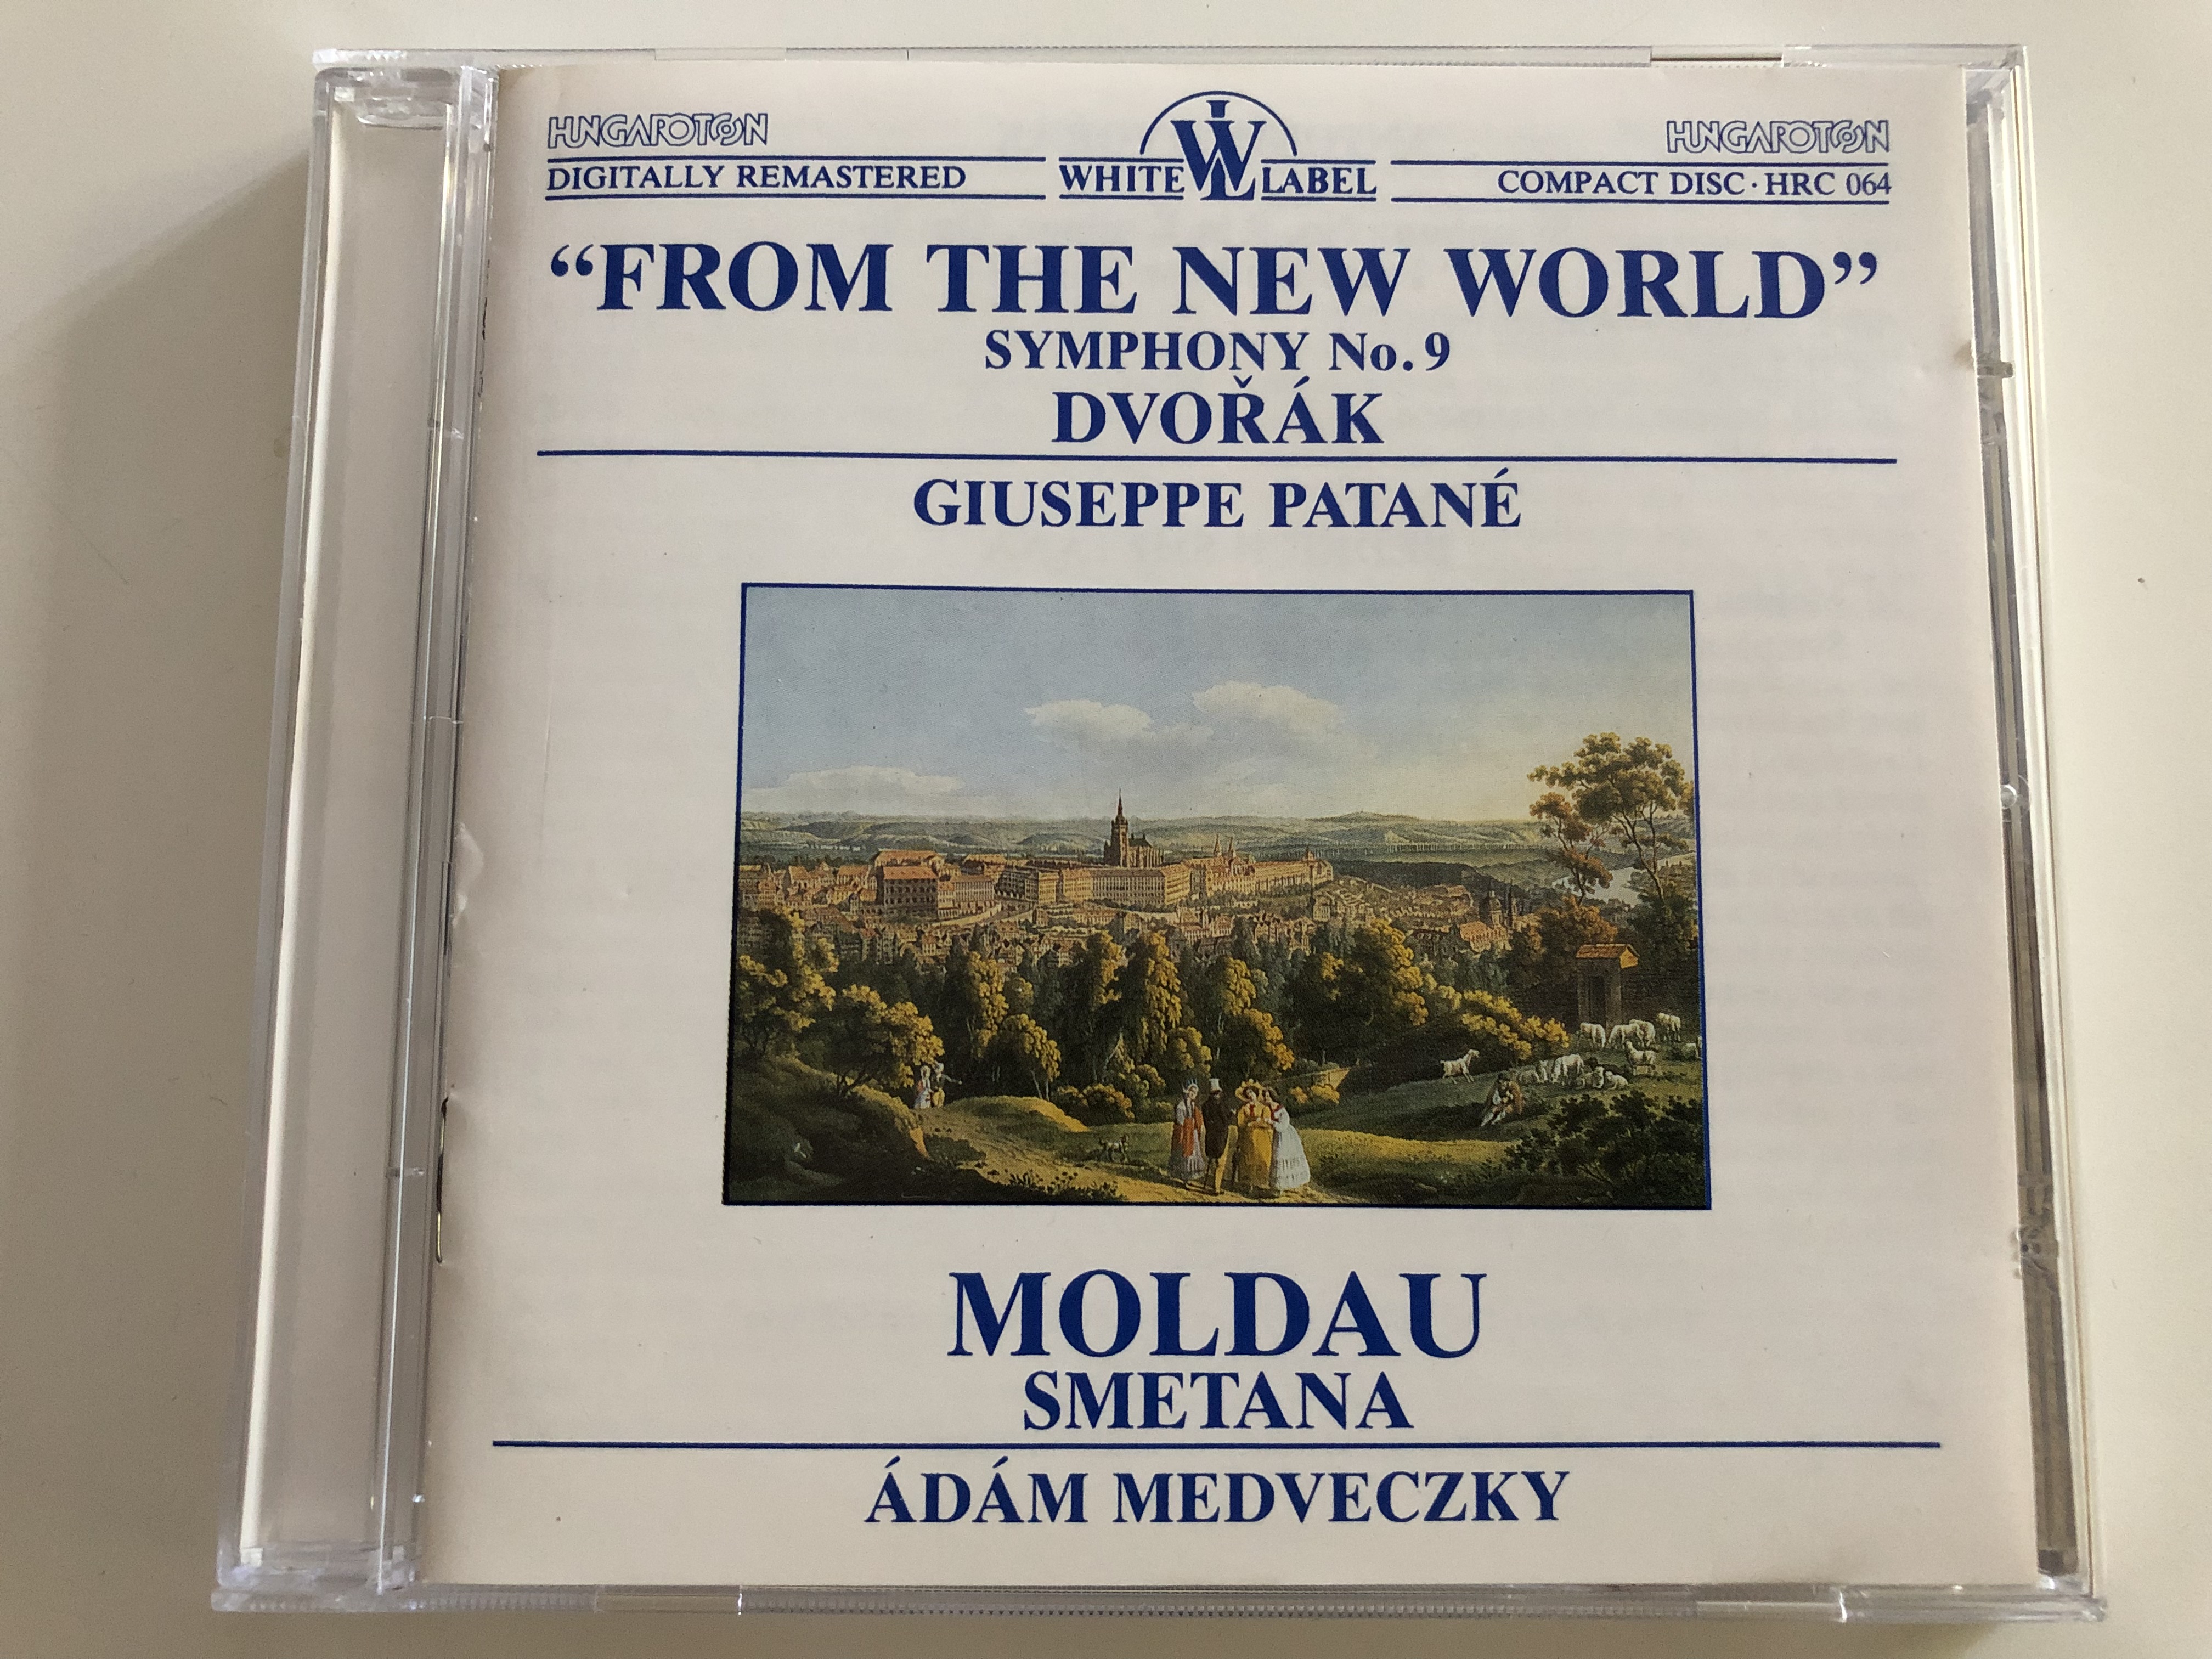 dvor-k-from-the-new-world-symphony-no.-9-giuseppe-patan-moldau-smetana-d-m-medveczky-hungaroton-white-label-audio-cd-1987-hrc-064-1-.jpg